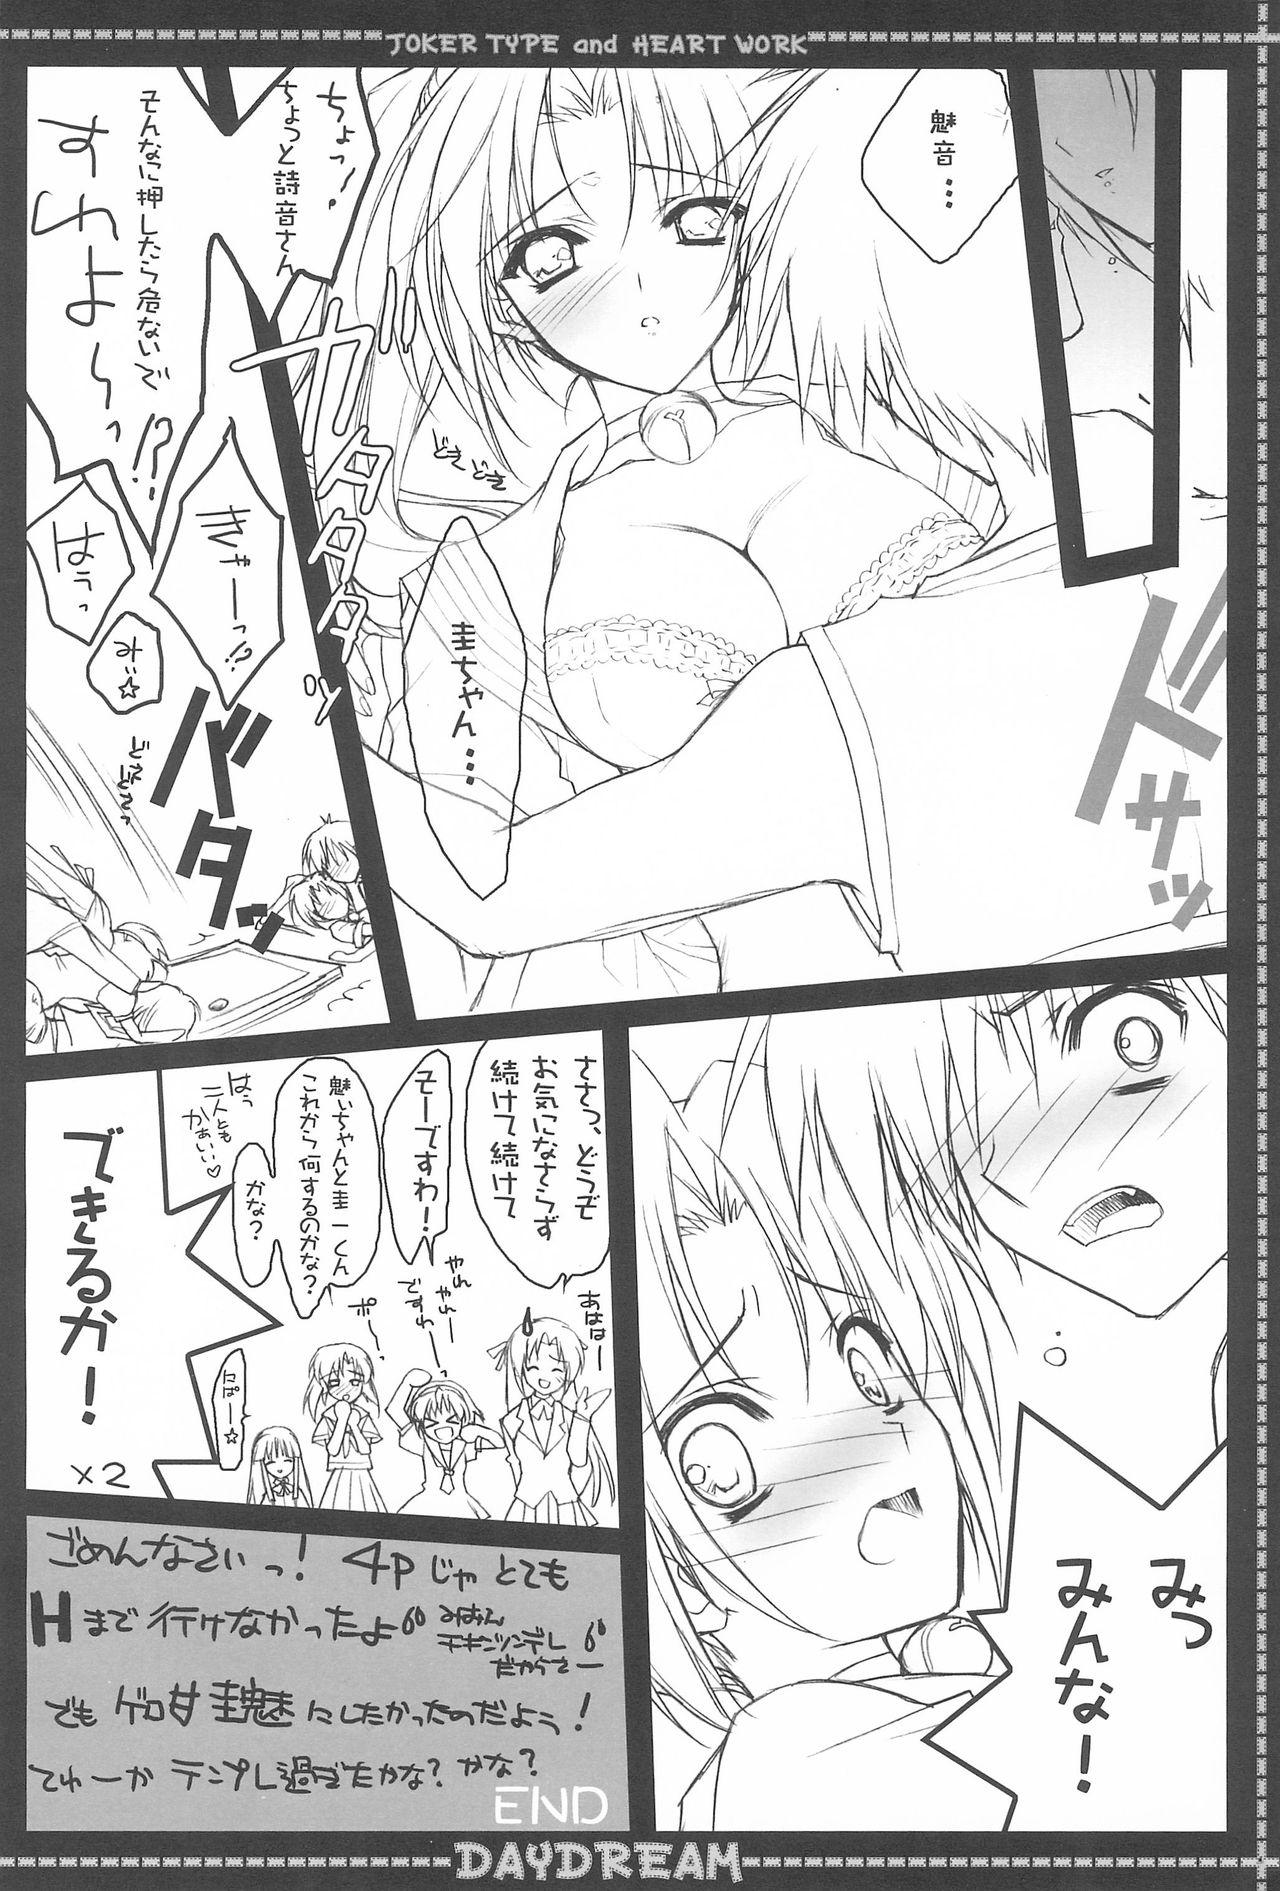 Petite Teen DAYDREAM - Higurashi no naku koro ni Gozo - Page 10